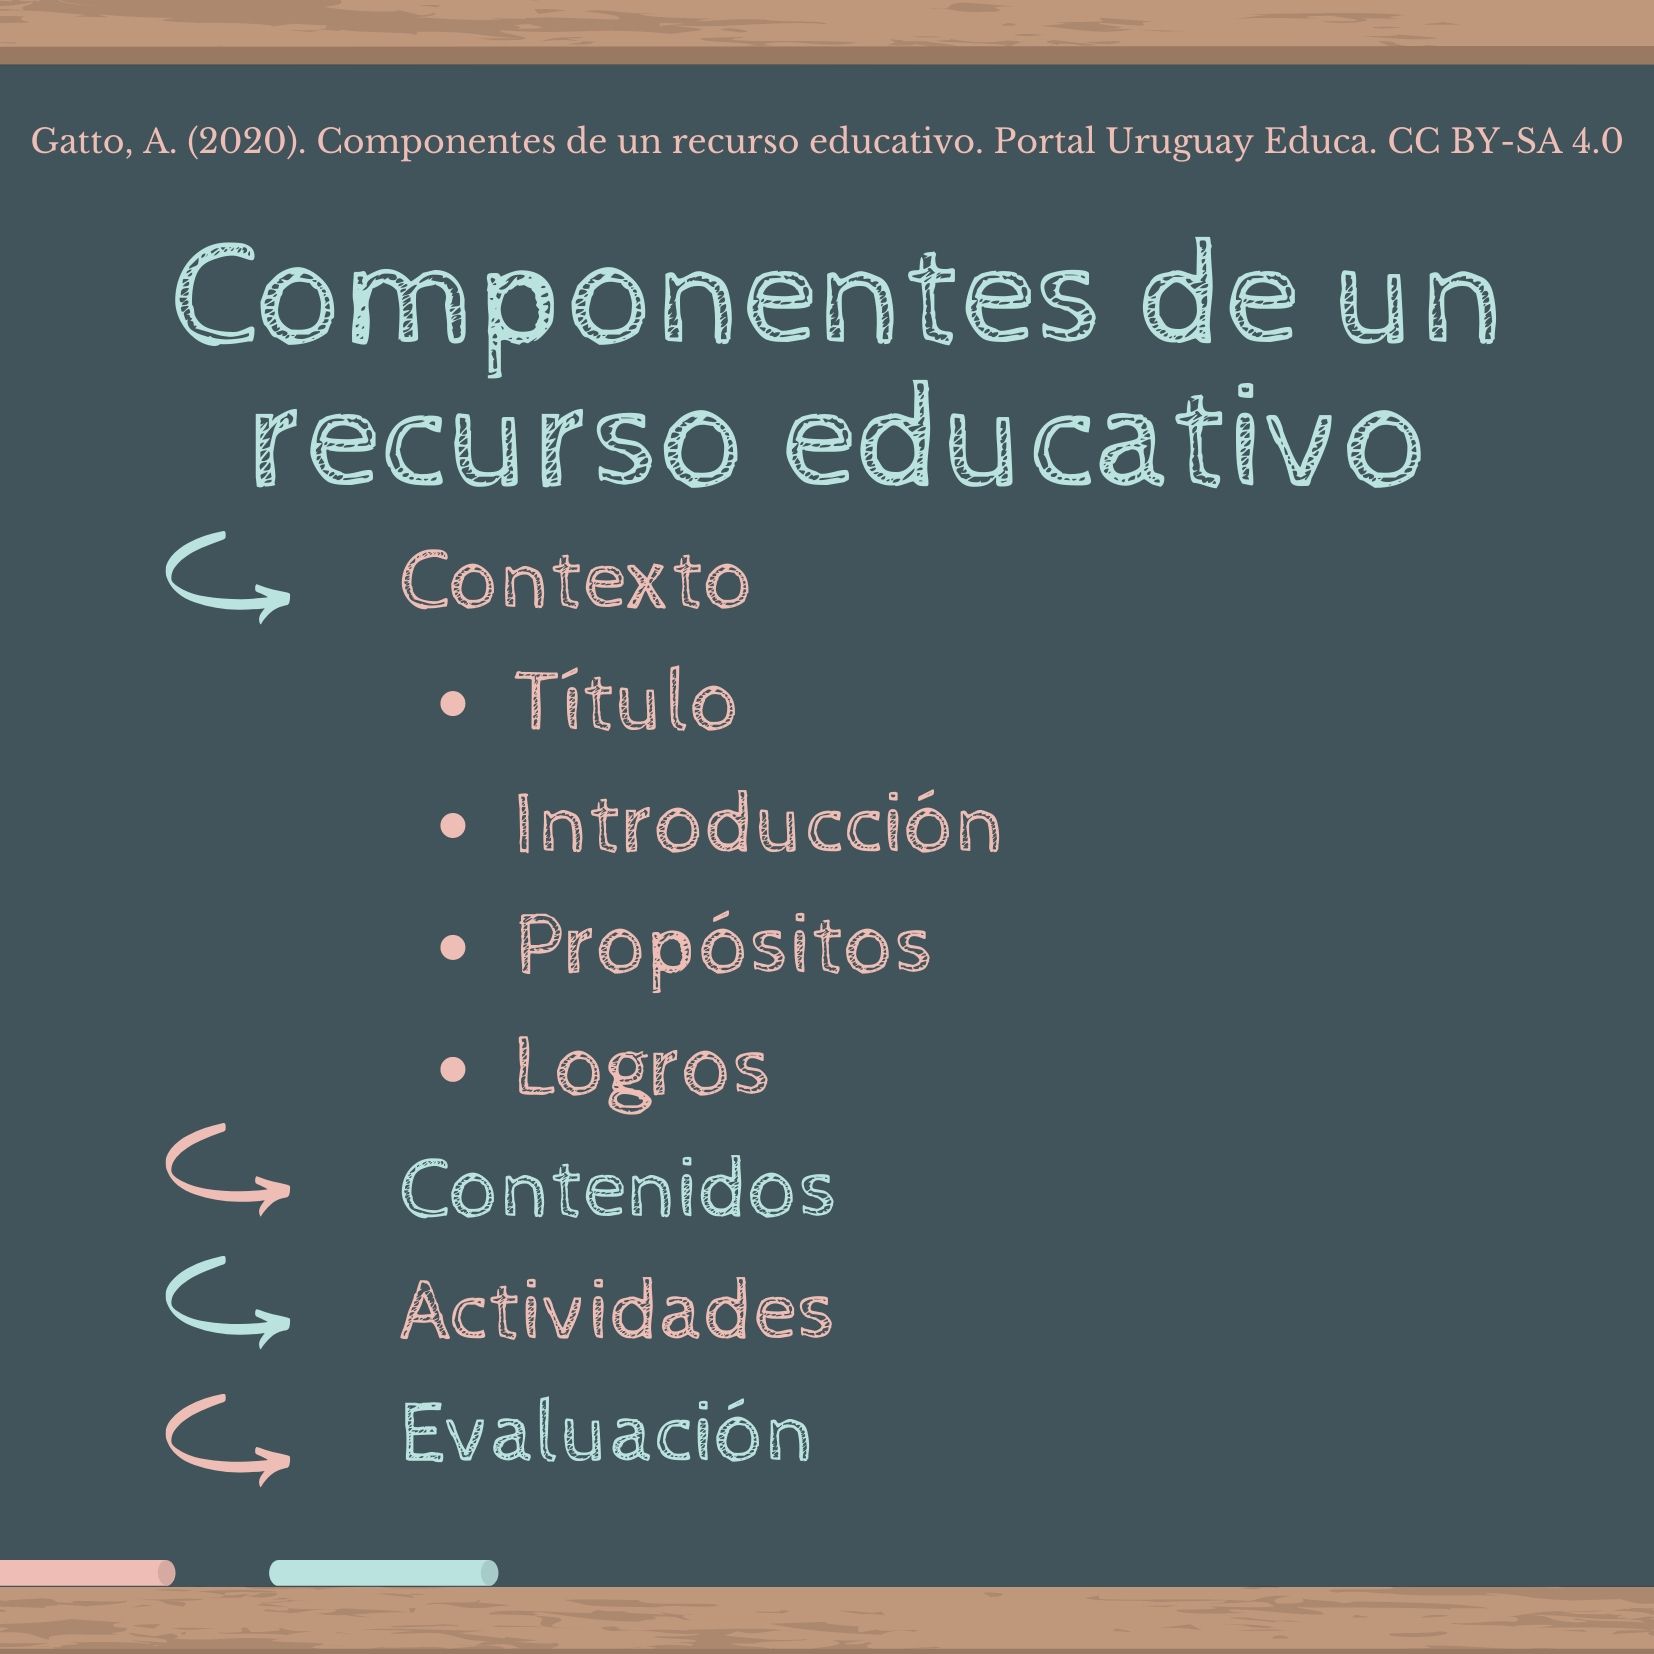 Contexto, contenidos, actividades y evaluación